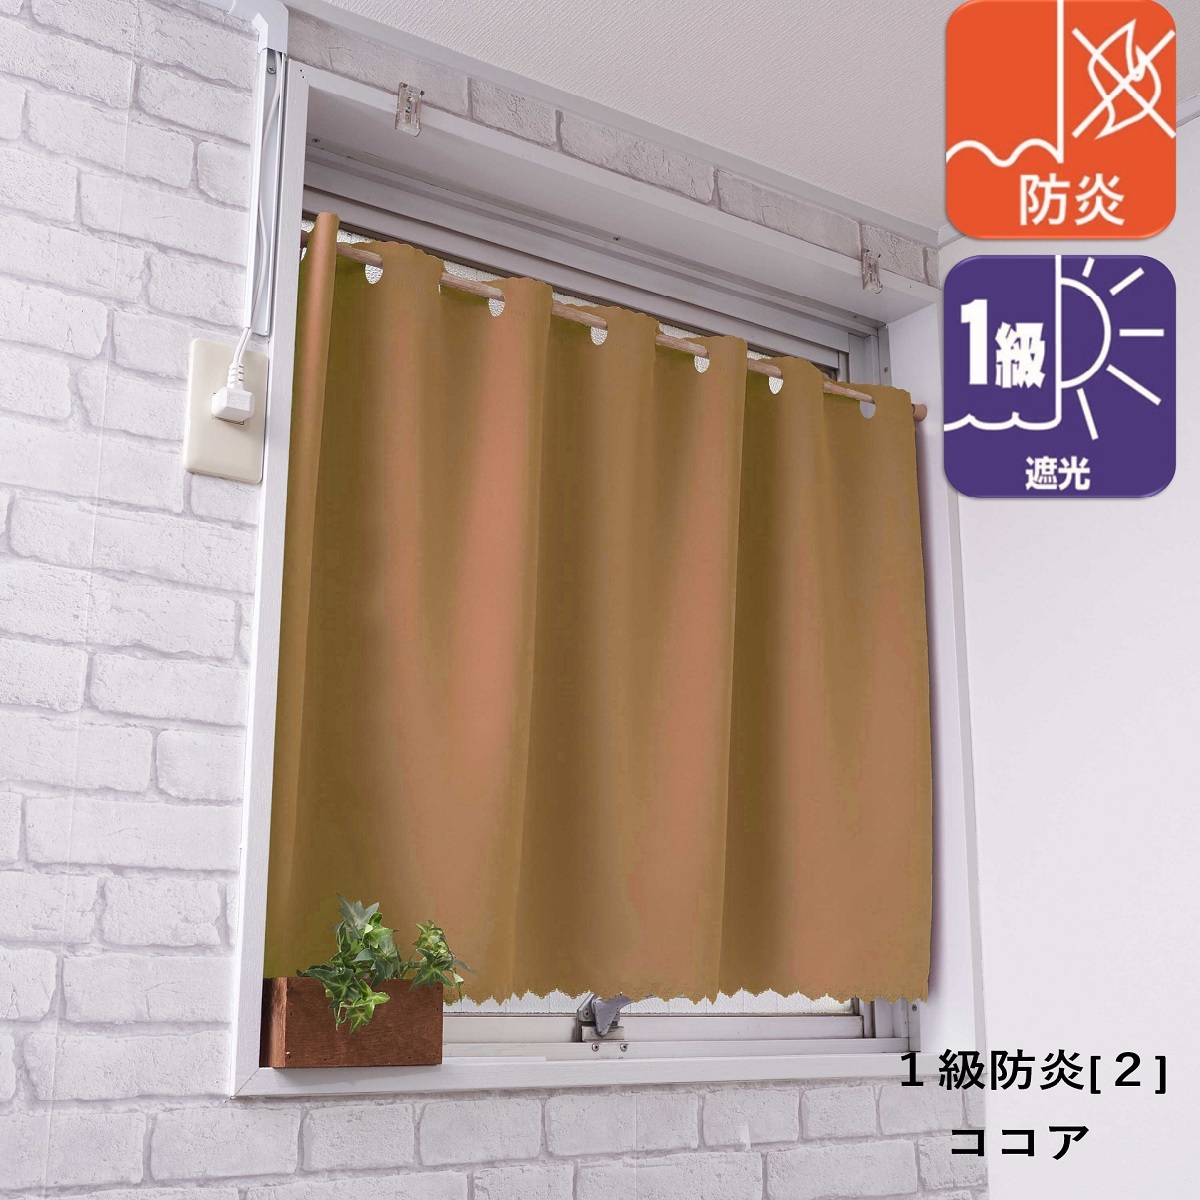 カフェカーテン 遮光 北欧 小窓 おしゃれ 安い UV 防炎 幅100 丈45cm